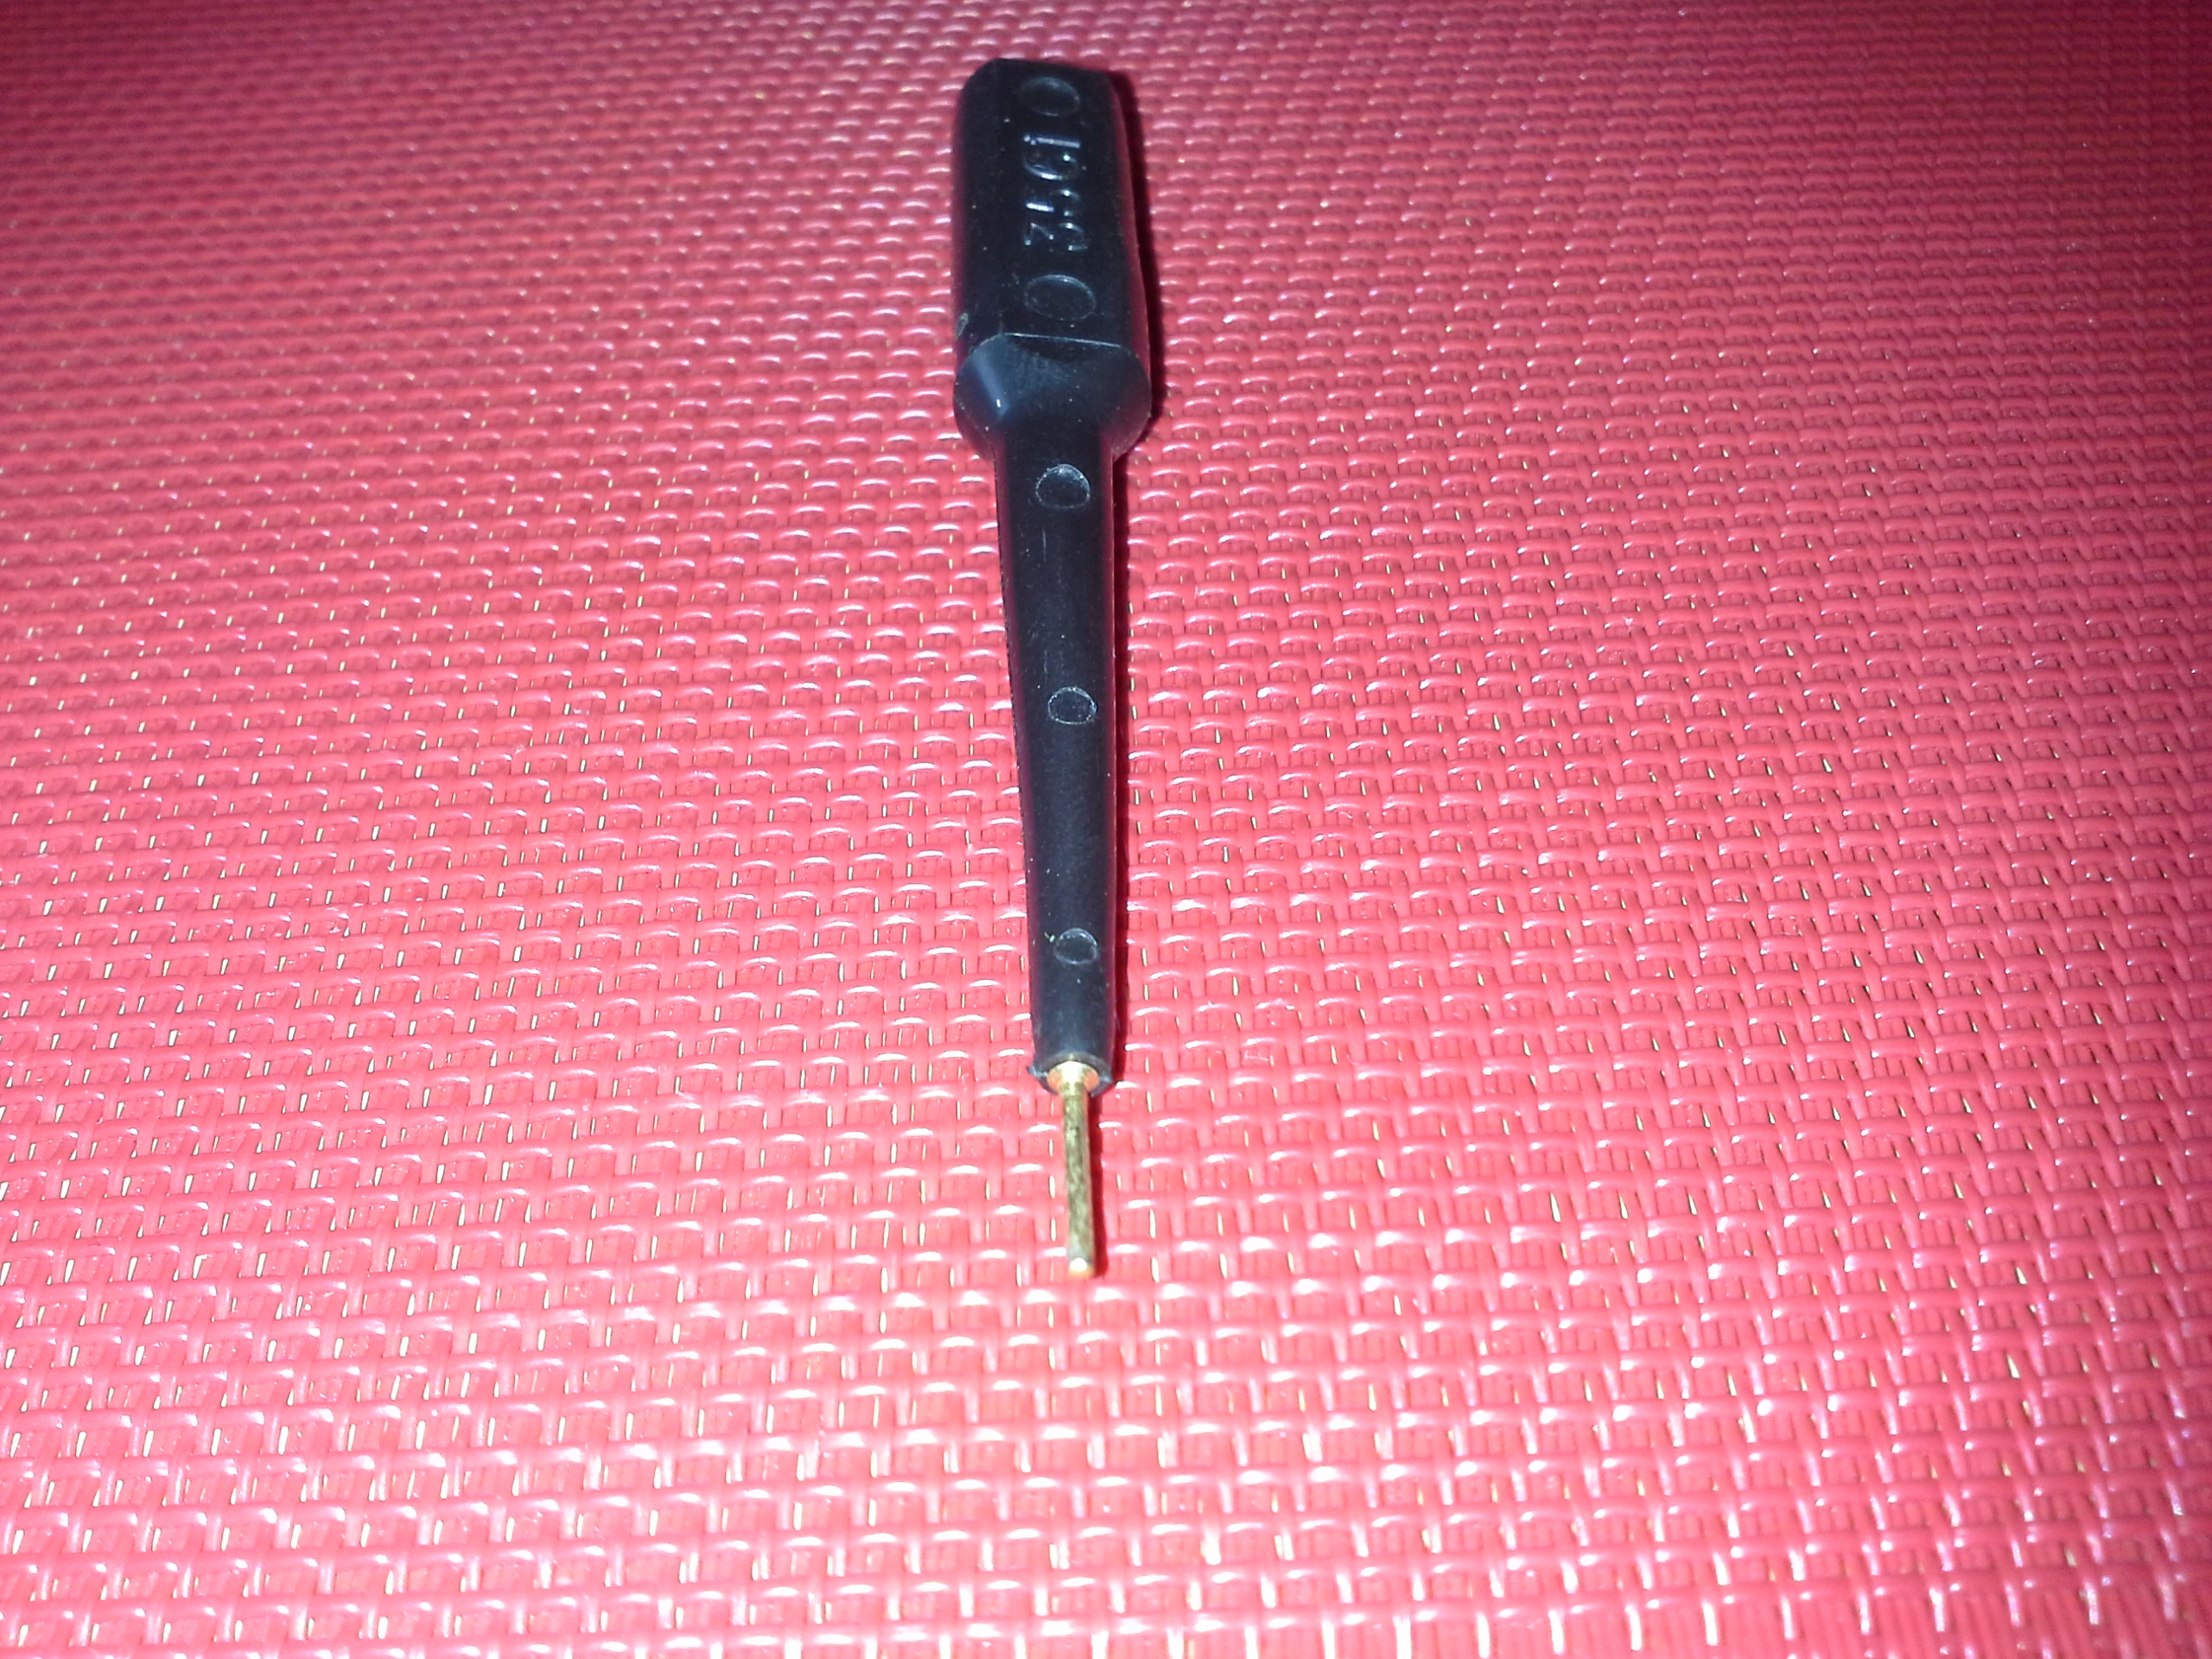 Test-Adapter schwarz-3561 für Mess-und Prüfgeräte